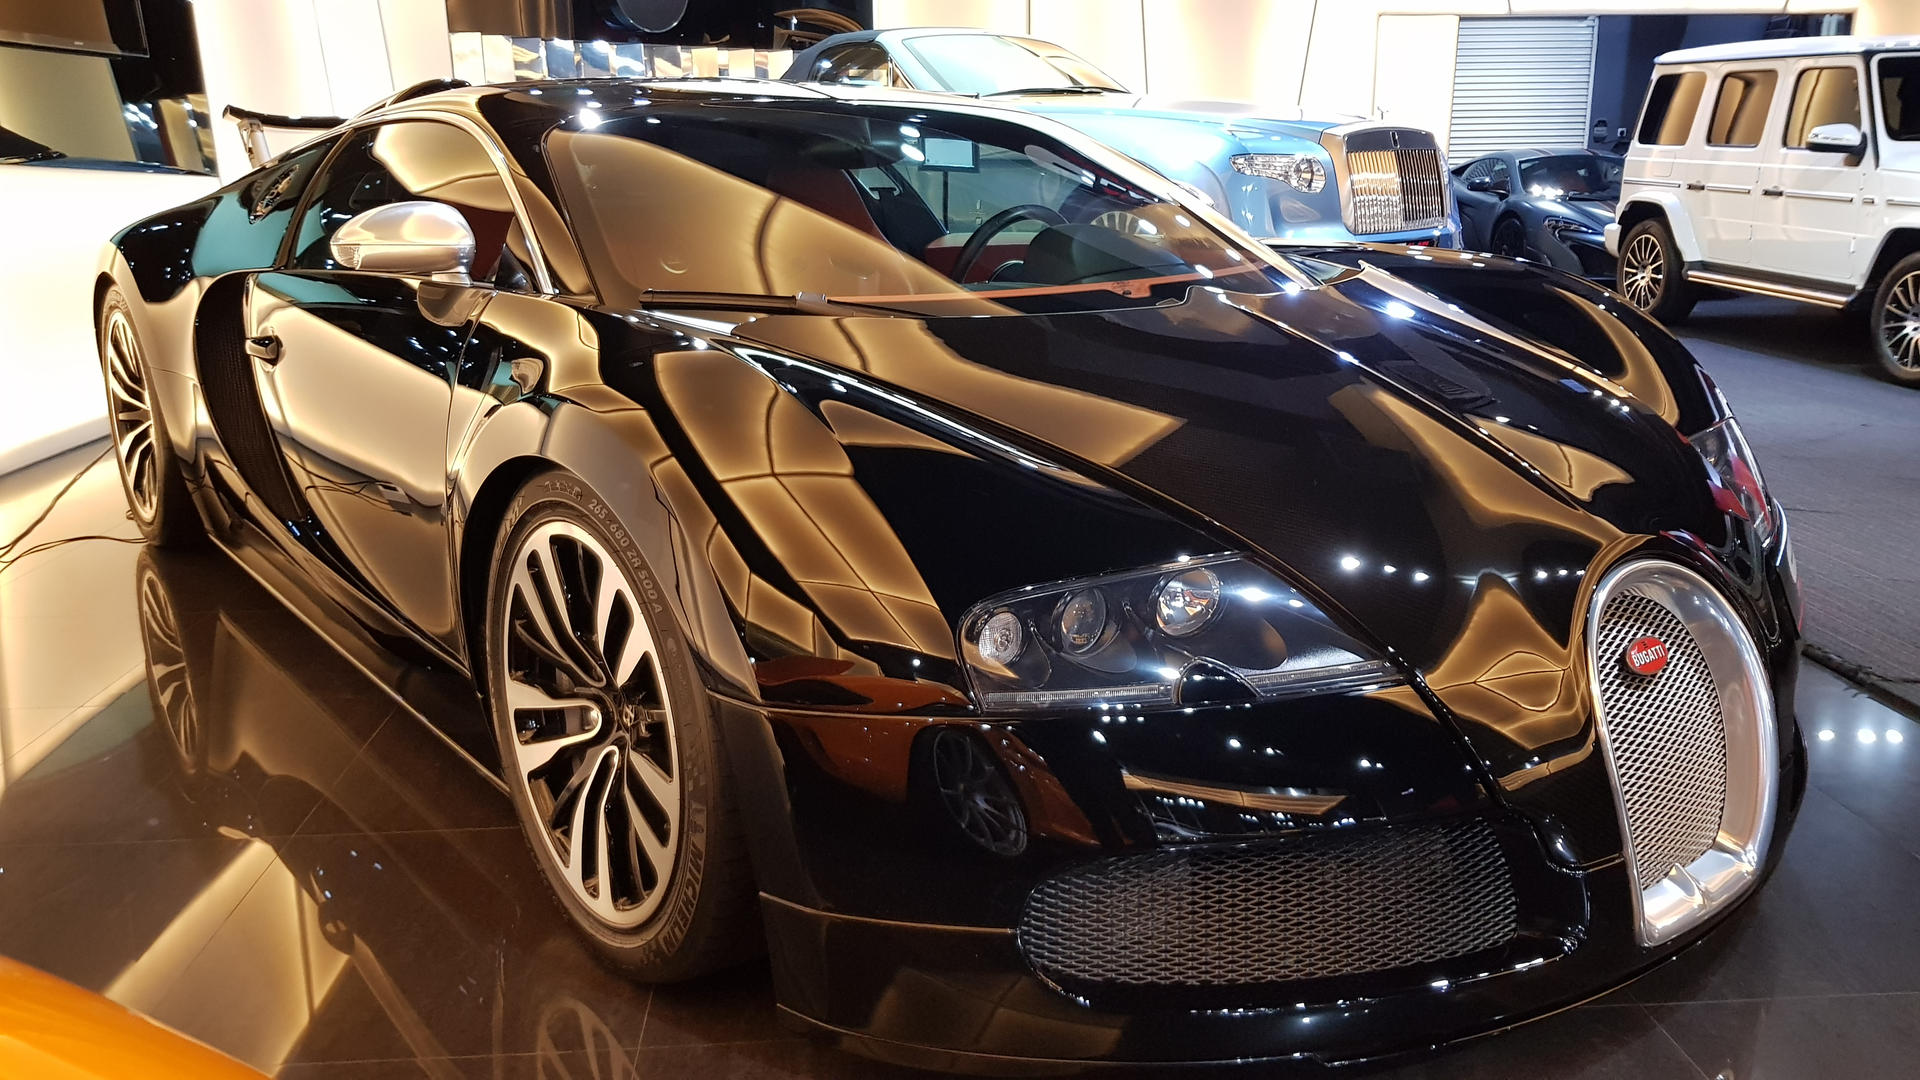 Bugatti Veyron Sang Noir Wallpapers